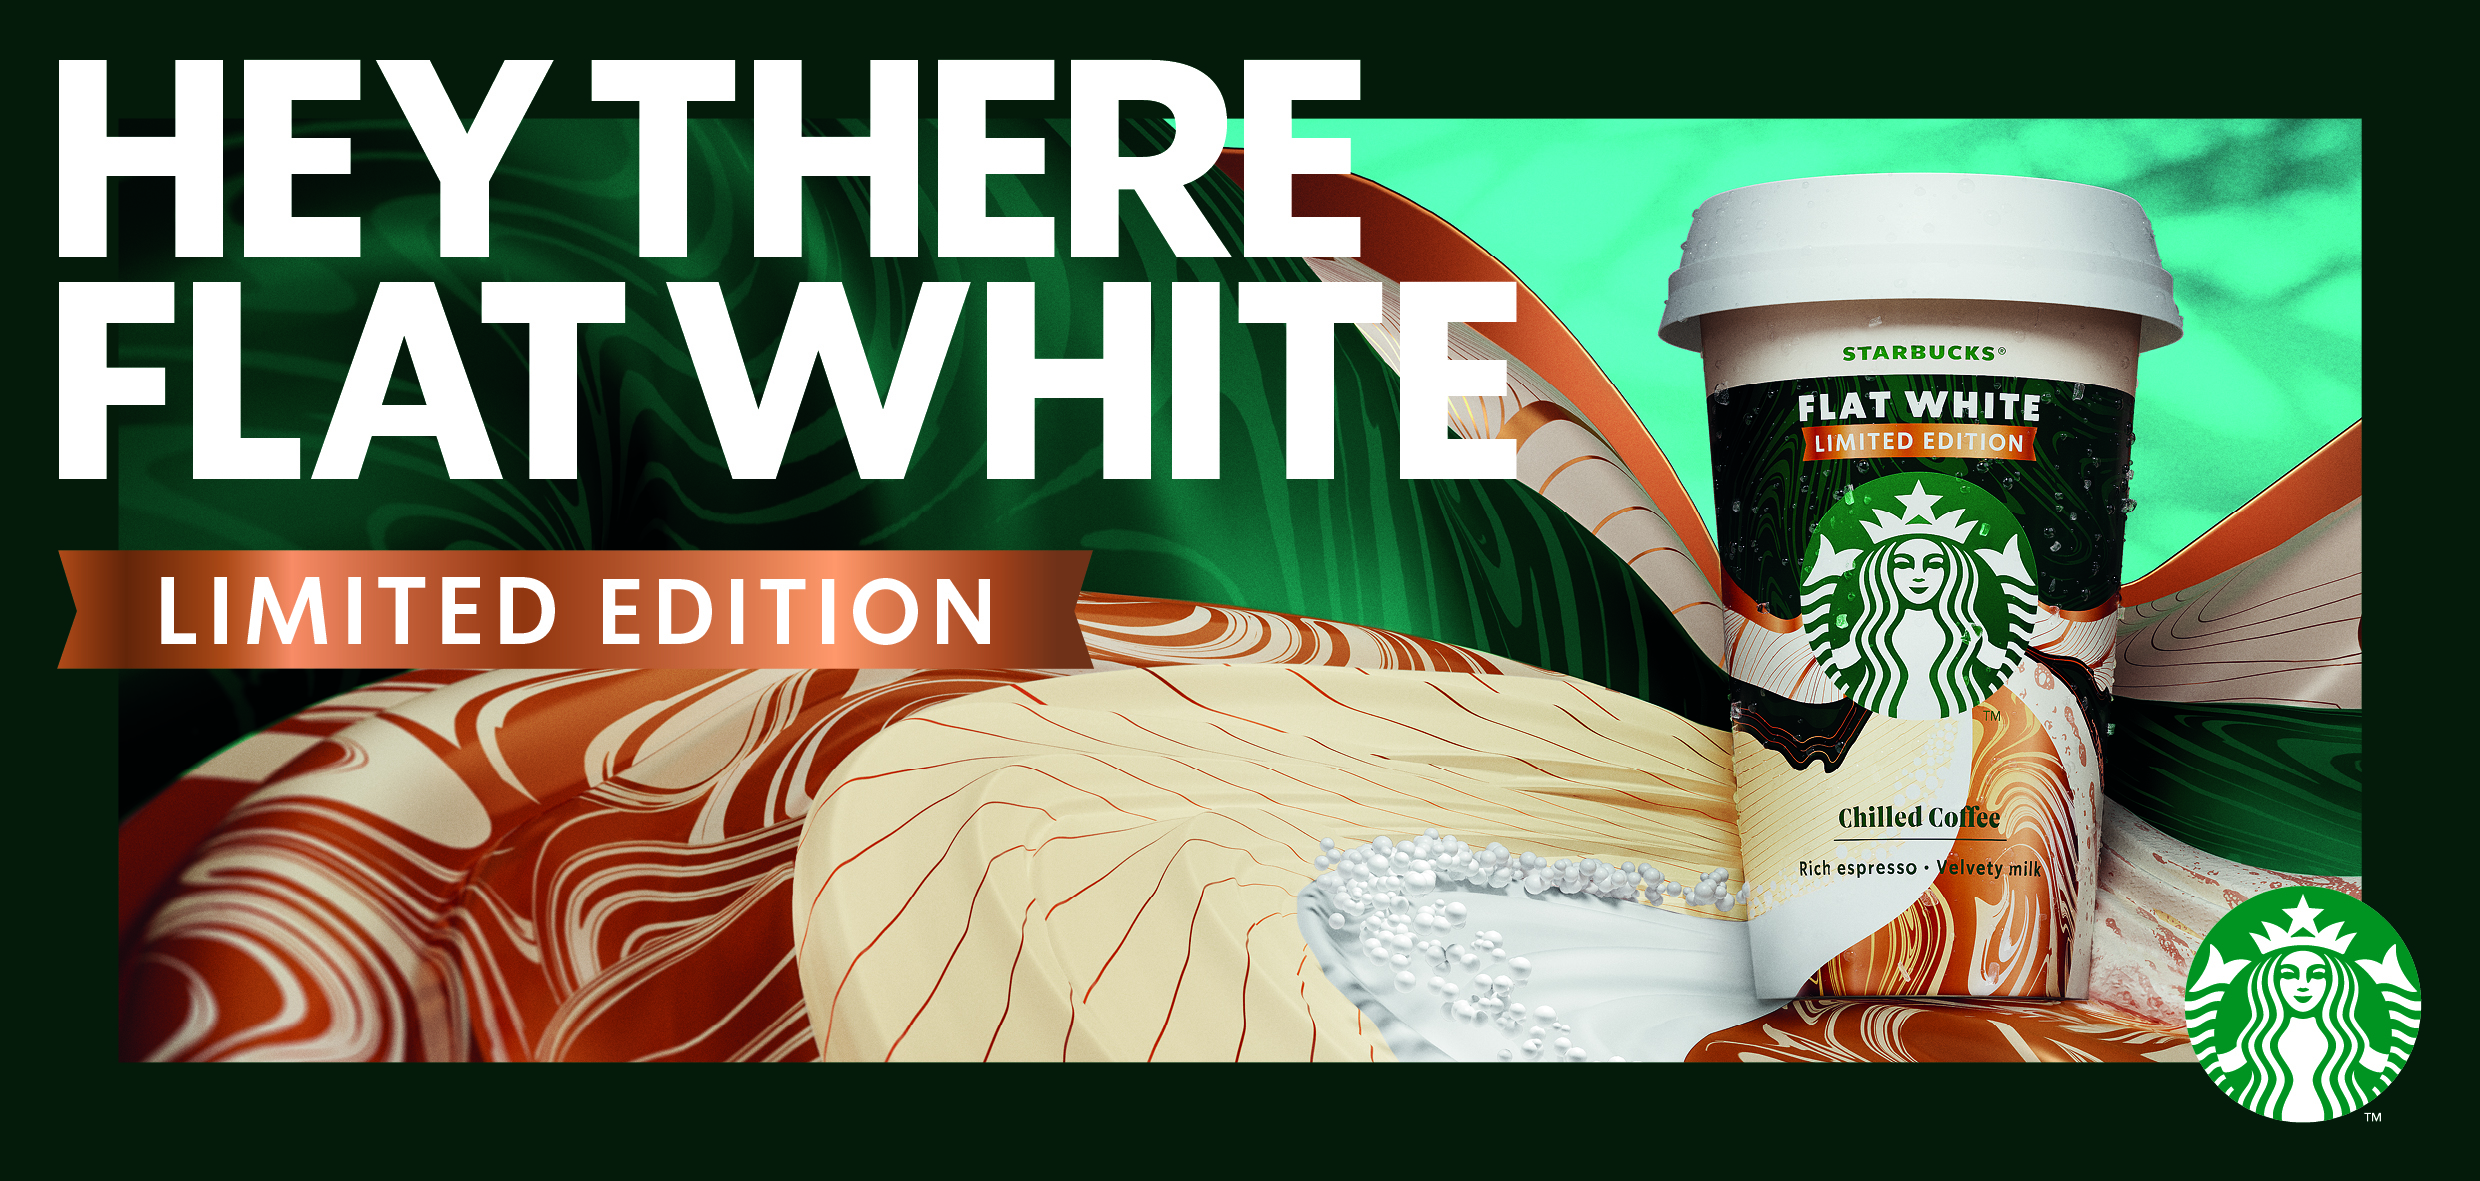 Το Starbucks Flat White Limited Edition είναι η πιο πρόσφατη προσθήκη στην οικογένεια των παγωμένων καφέδων